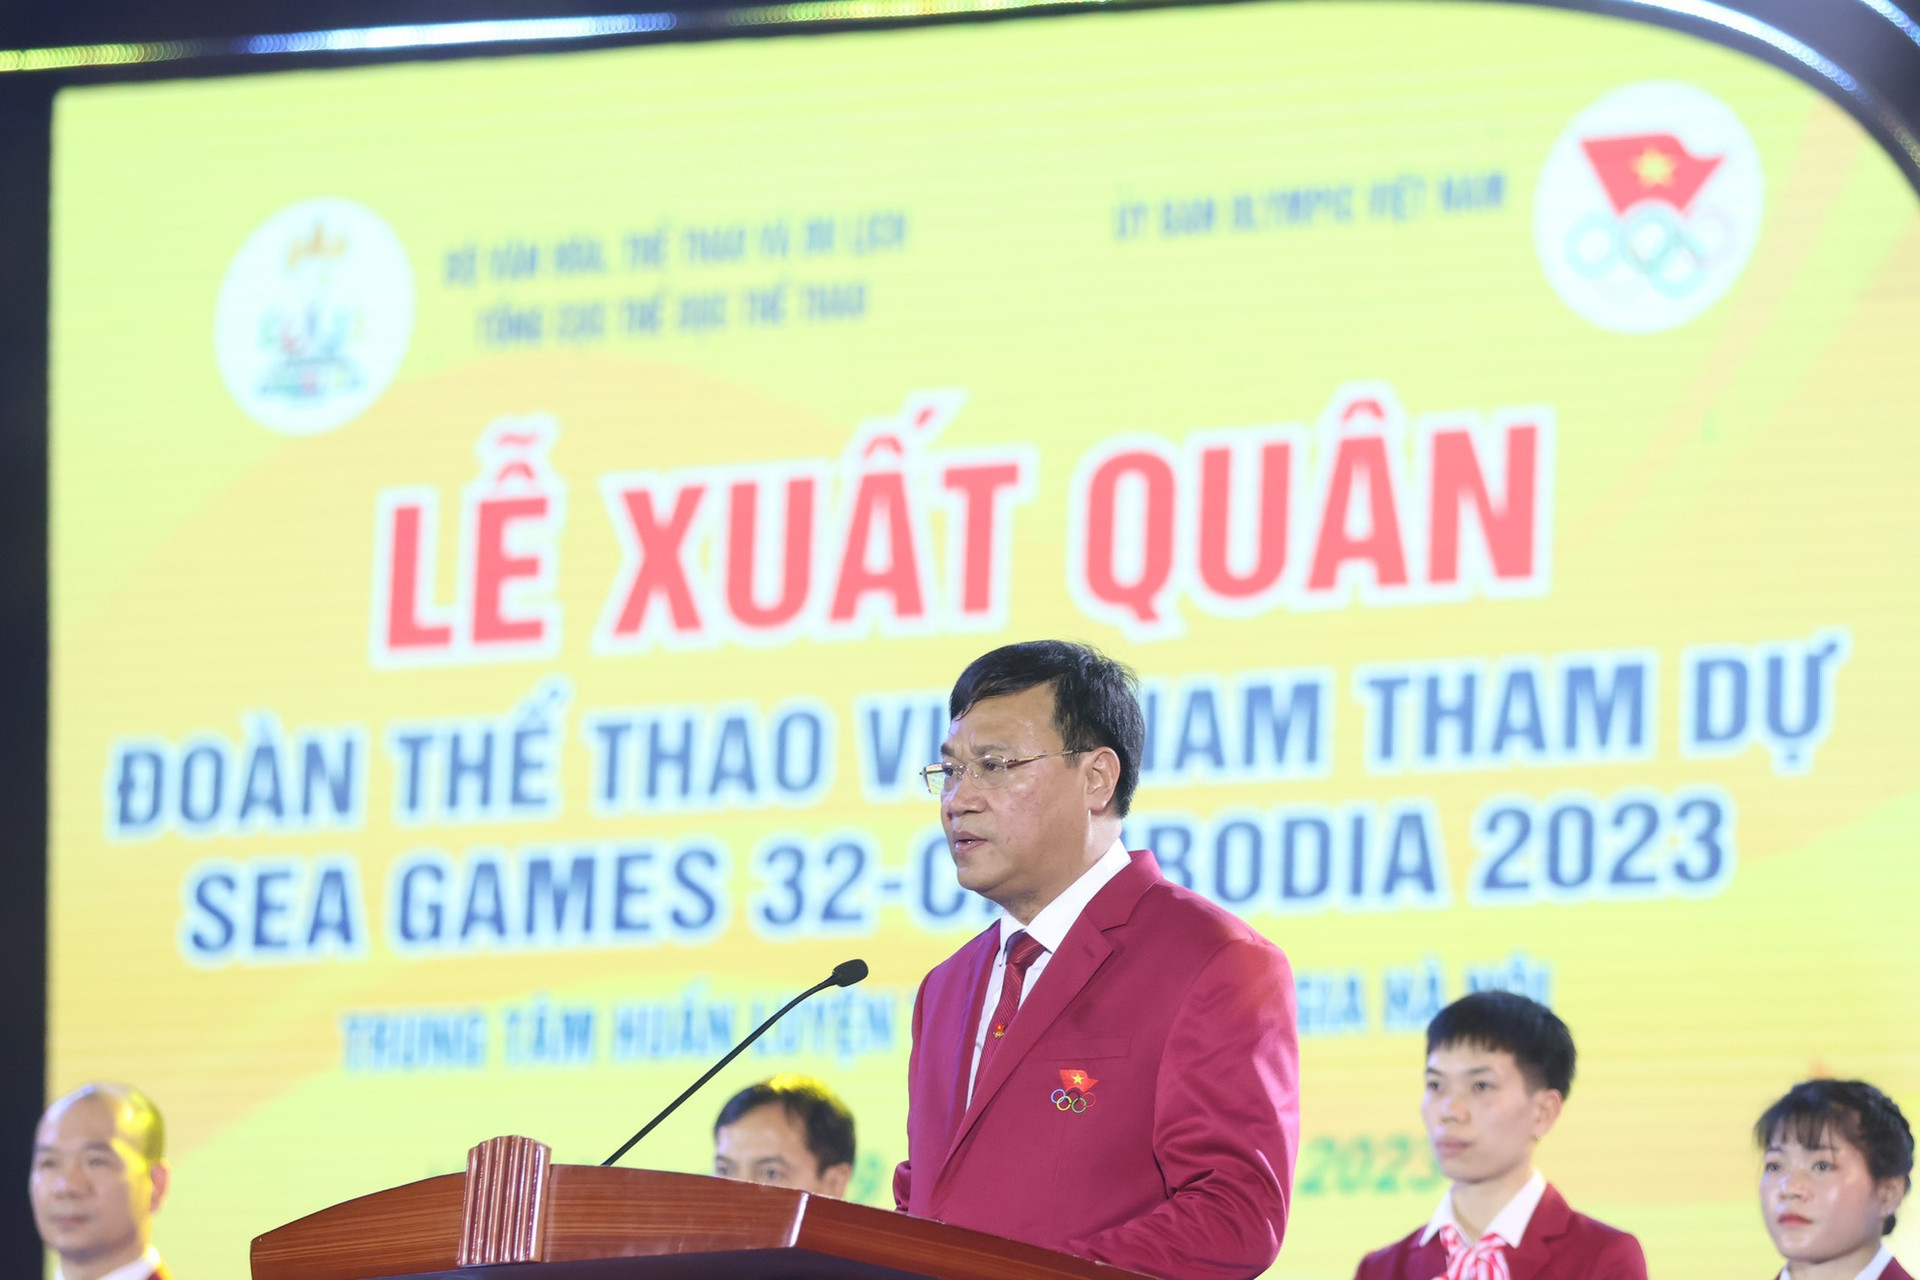 Lễ xuất quân Đoàn Thể thao Việt Nam dự SEA Games 32 - Ảnh 2.